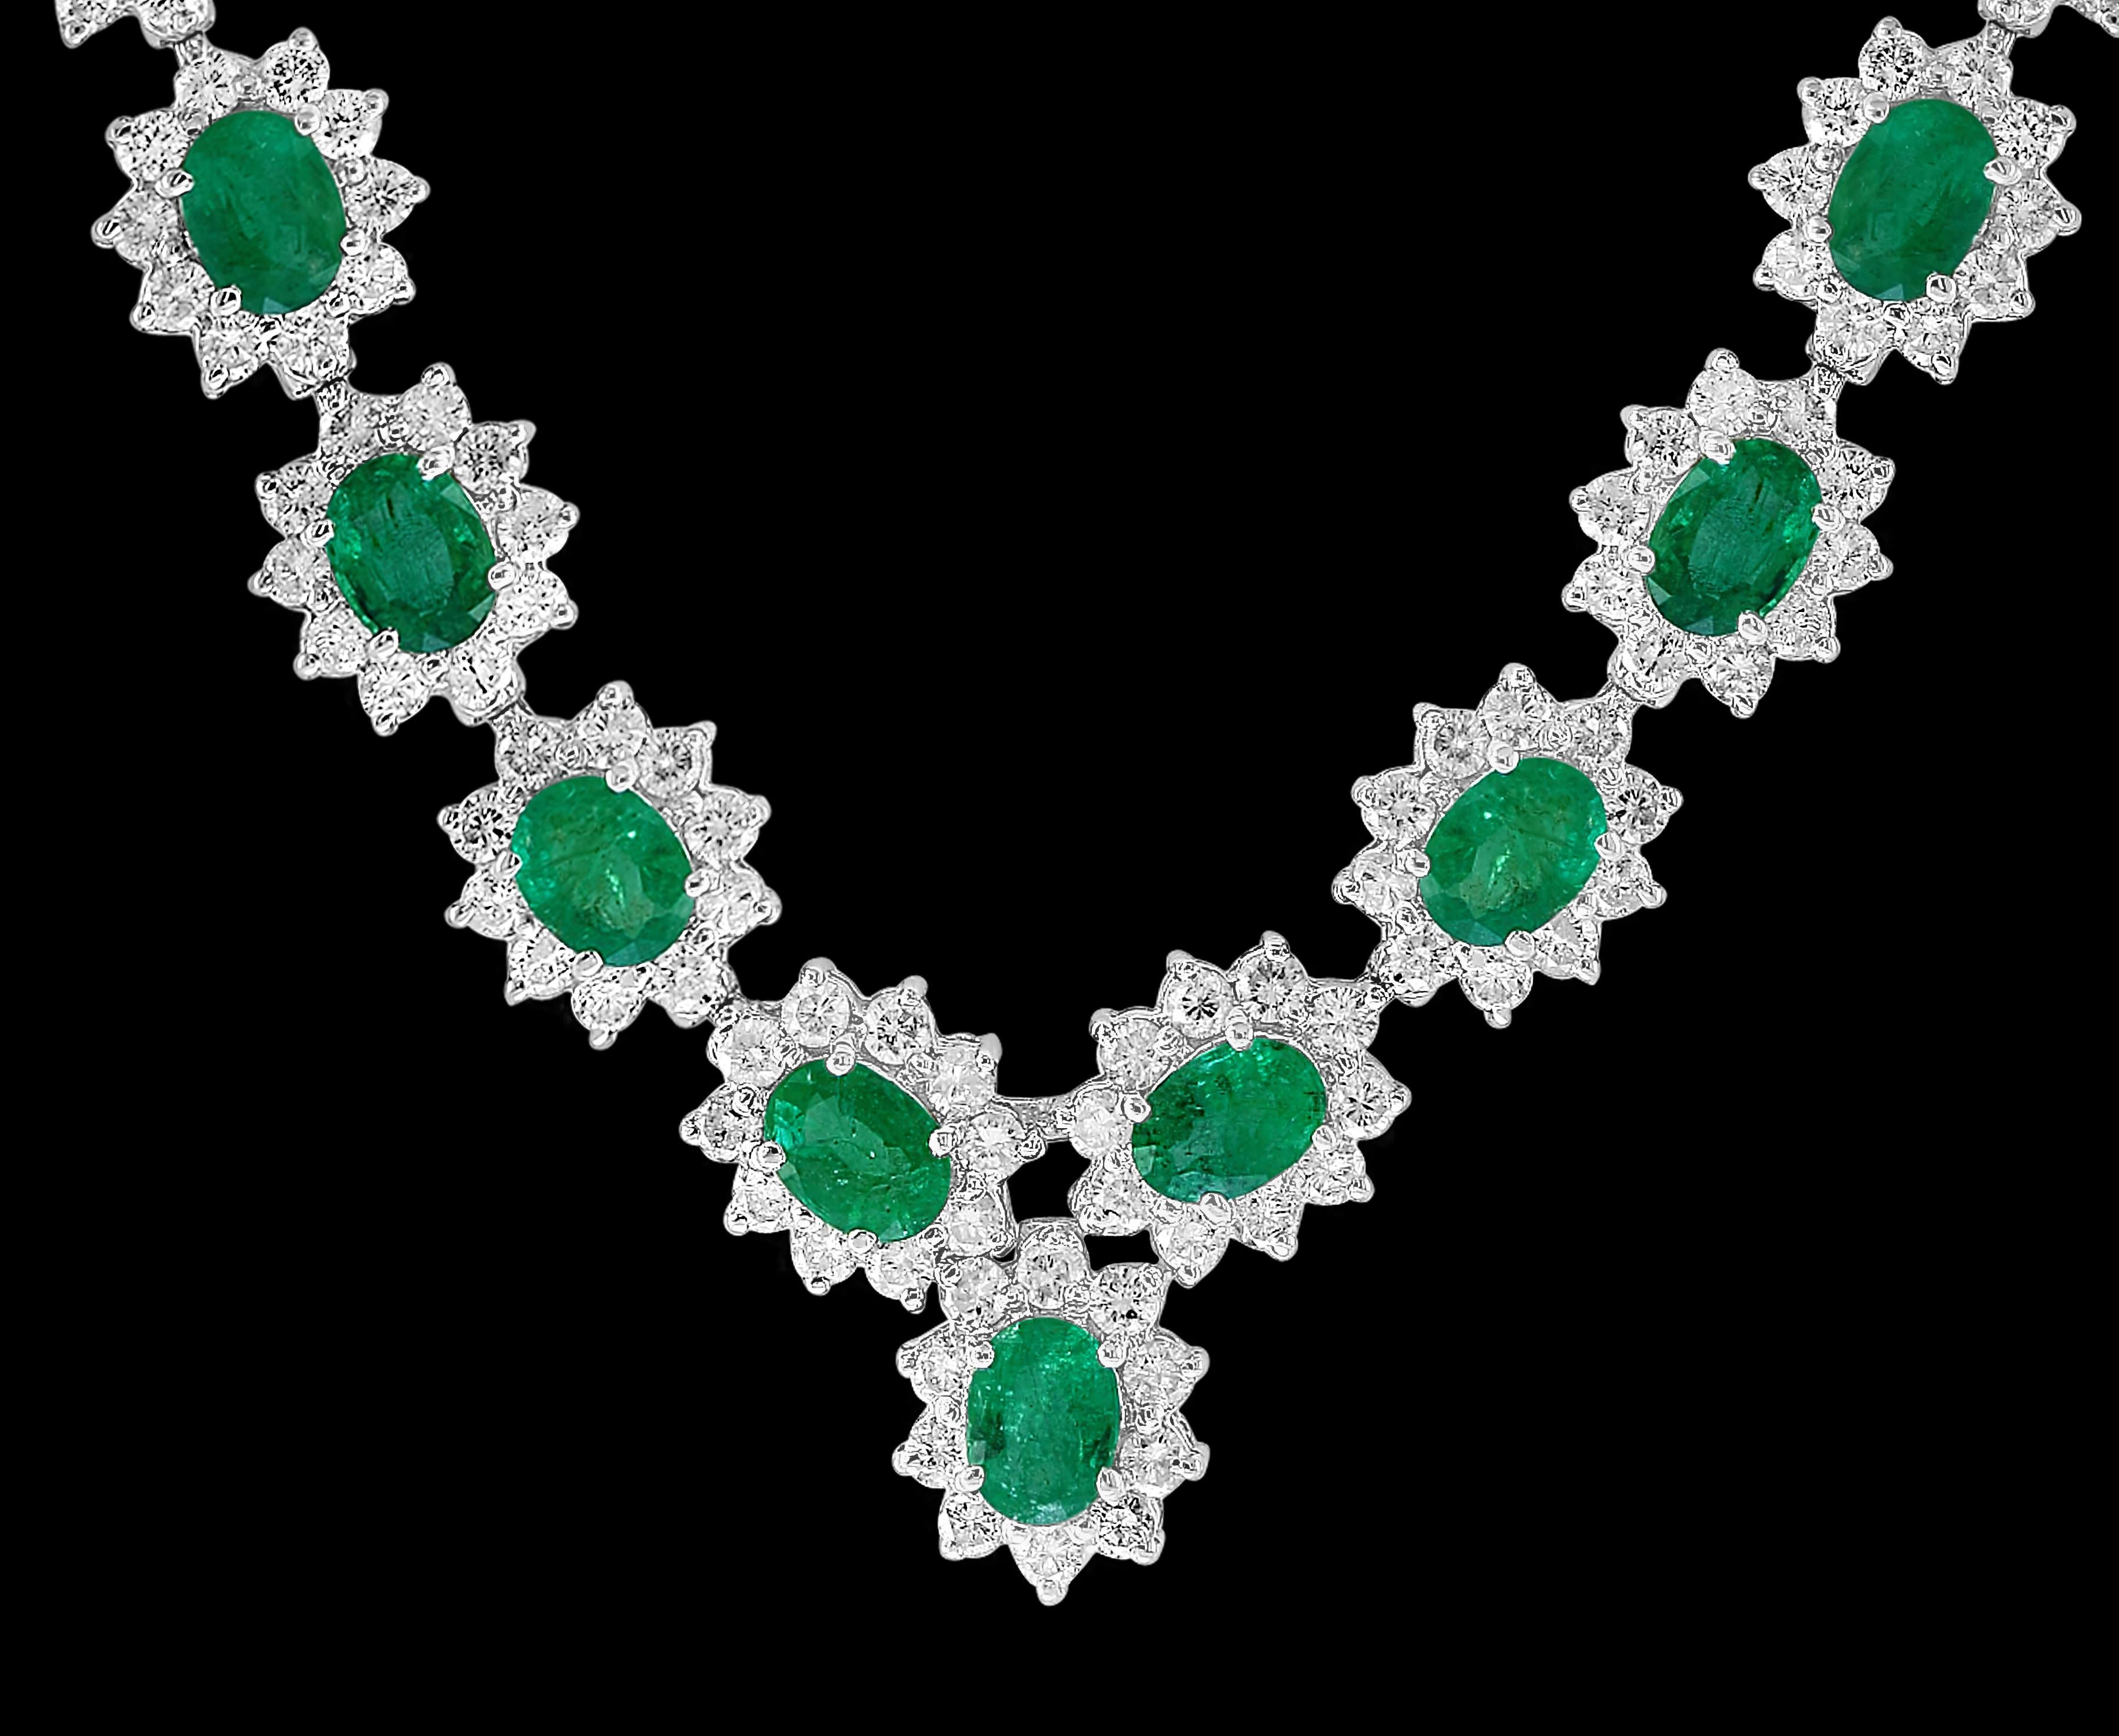 35 carat diamond necklace